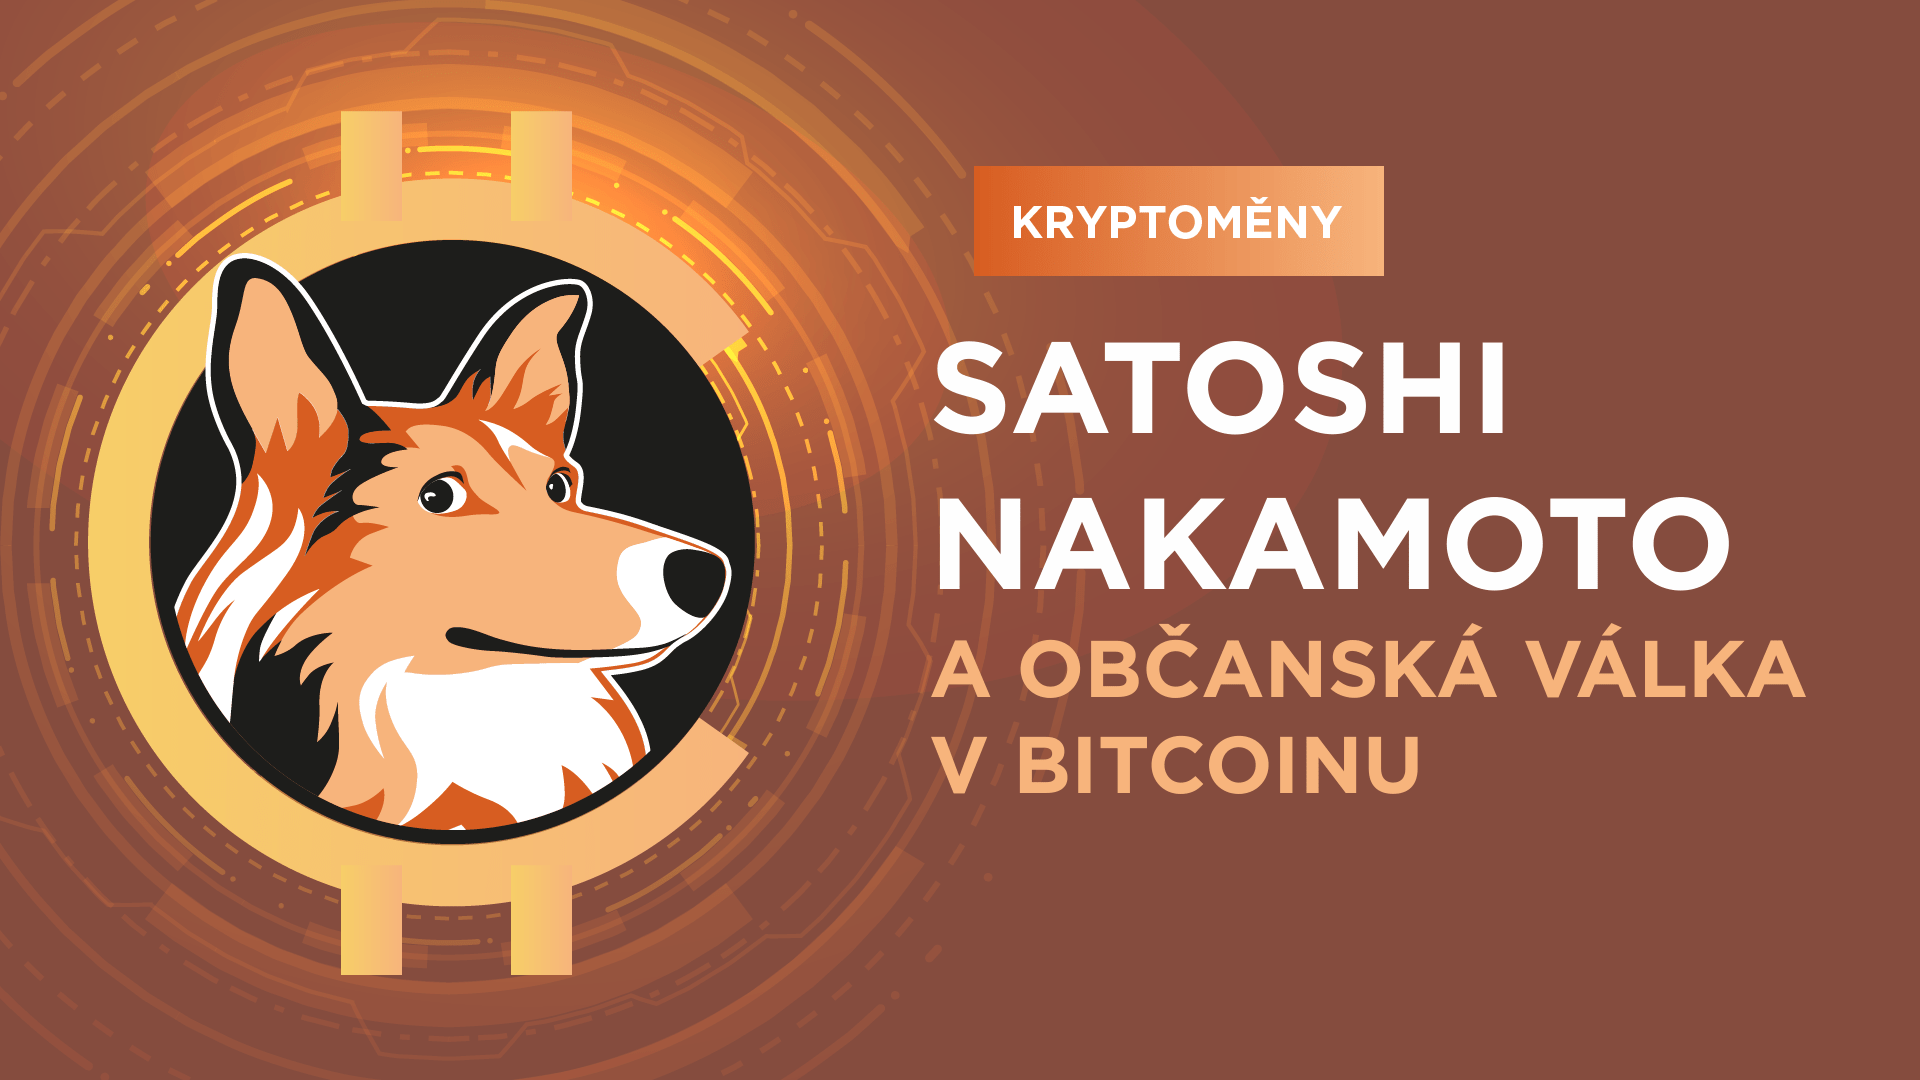 Kdo je Satoshi Nakamoto a proč proběhla občanská válka v Bitcoinu